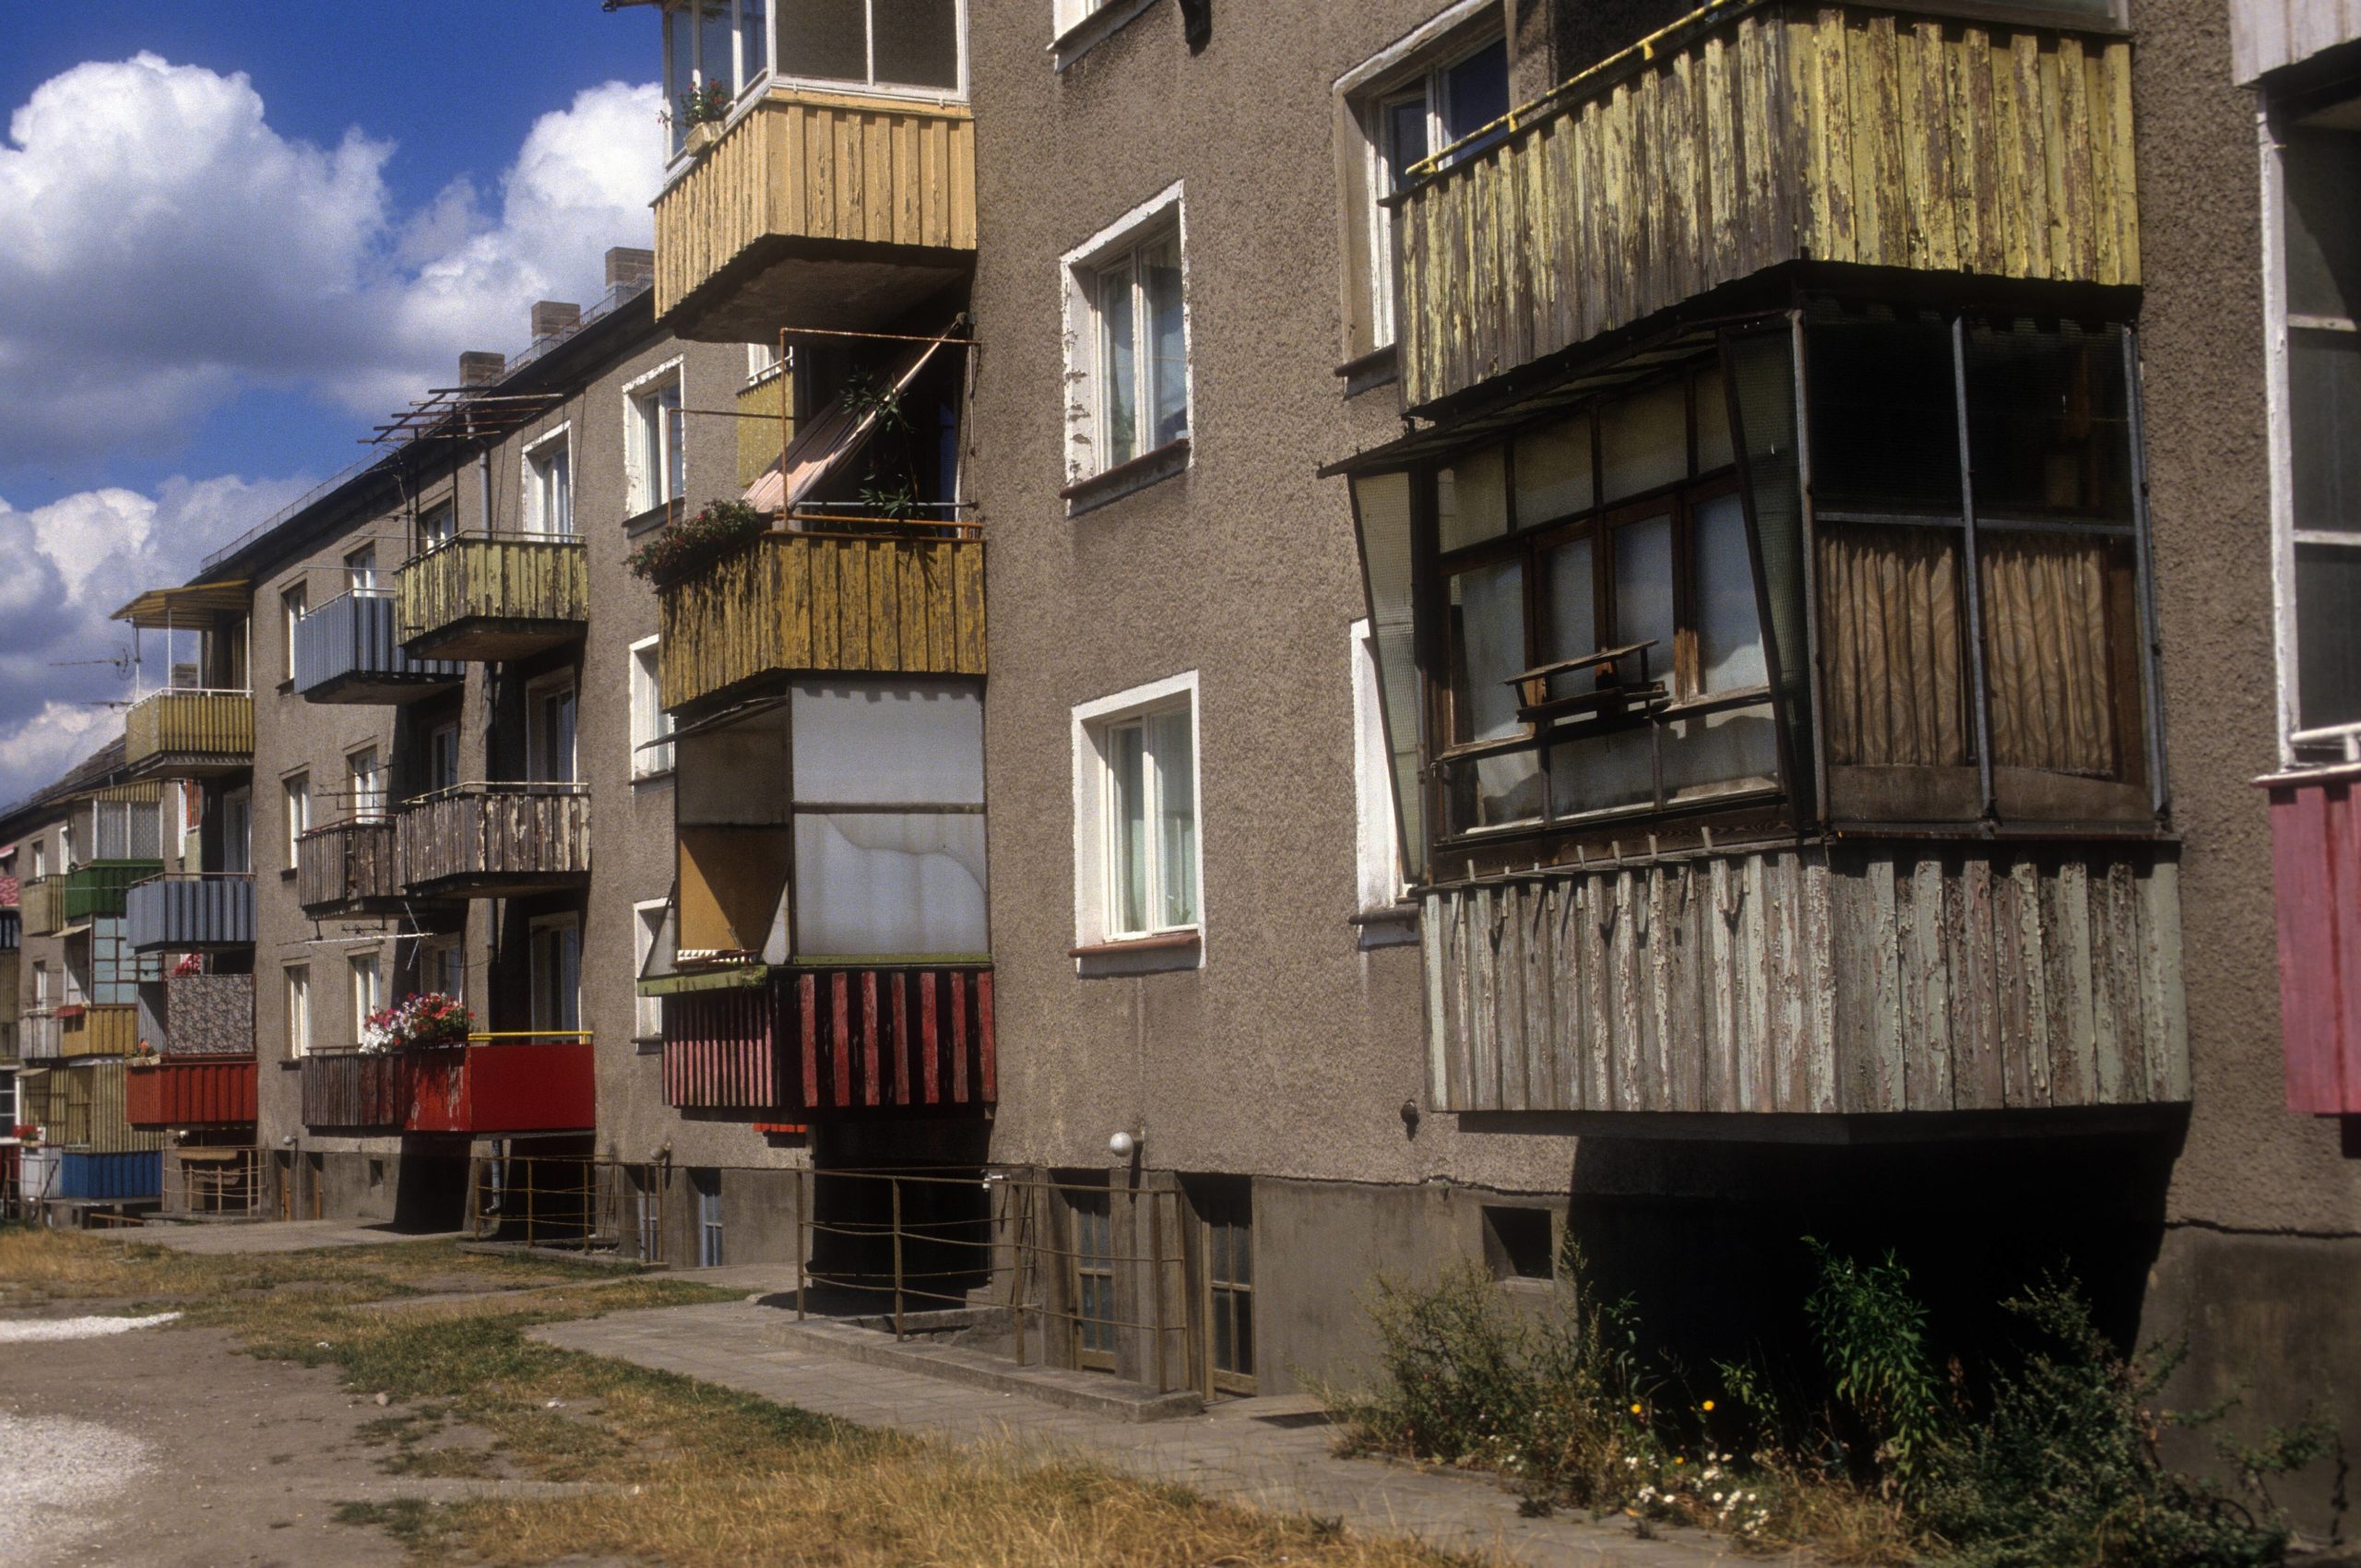 Heruntergekommene Häuser in Rüdersdorf bei Berlin, 1991. Foto: Imago/Rex Schober